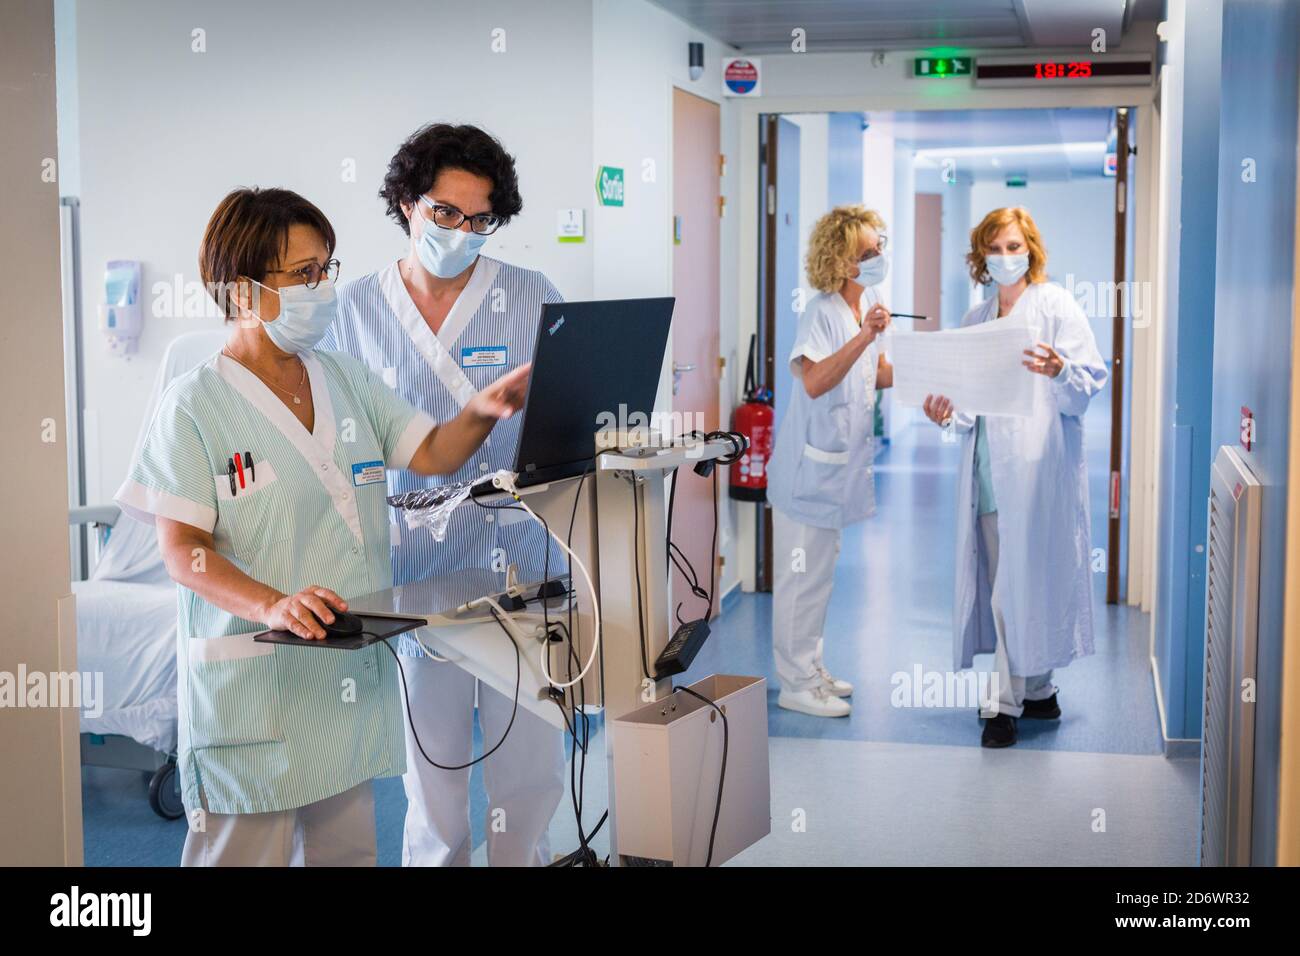 Reprise de l'activité dans l'unité de chirurgie ambulatoire polyvalente avec suivi des protocoles de sécurité sanitaire de COVID, hôpital de Bordeaux, mai 2020. Banque D'Images